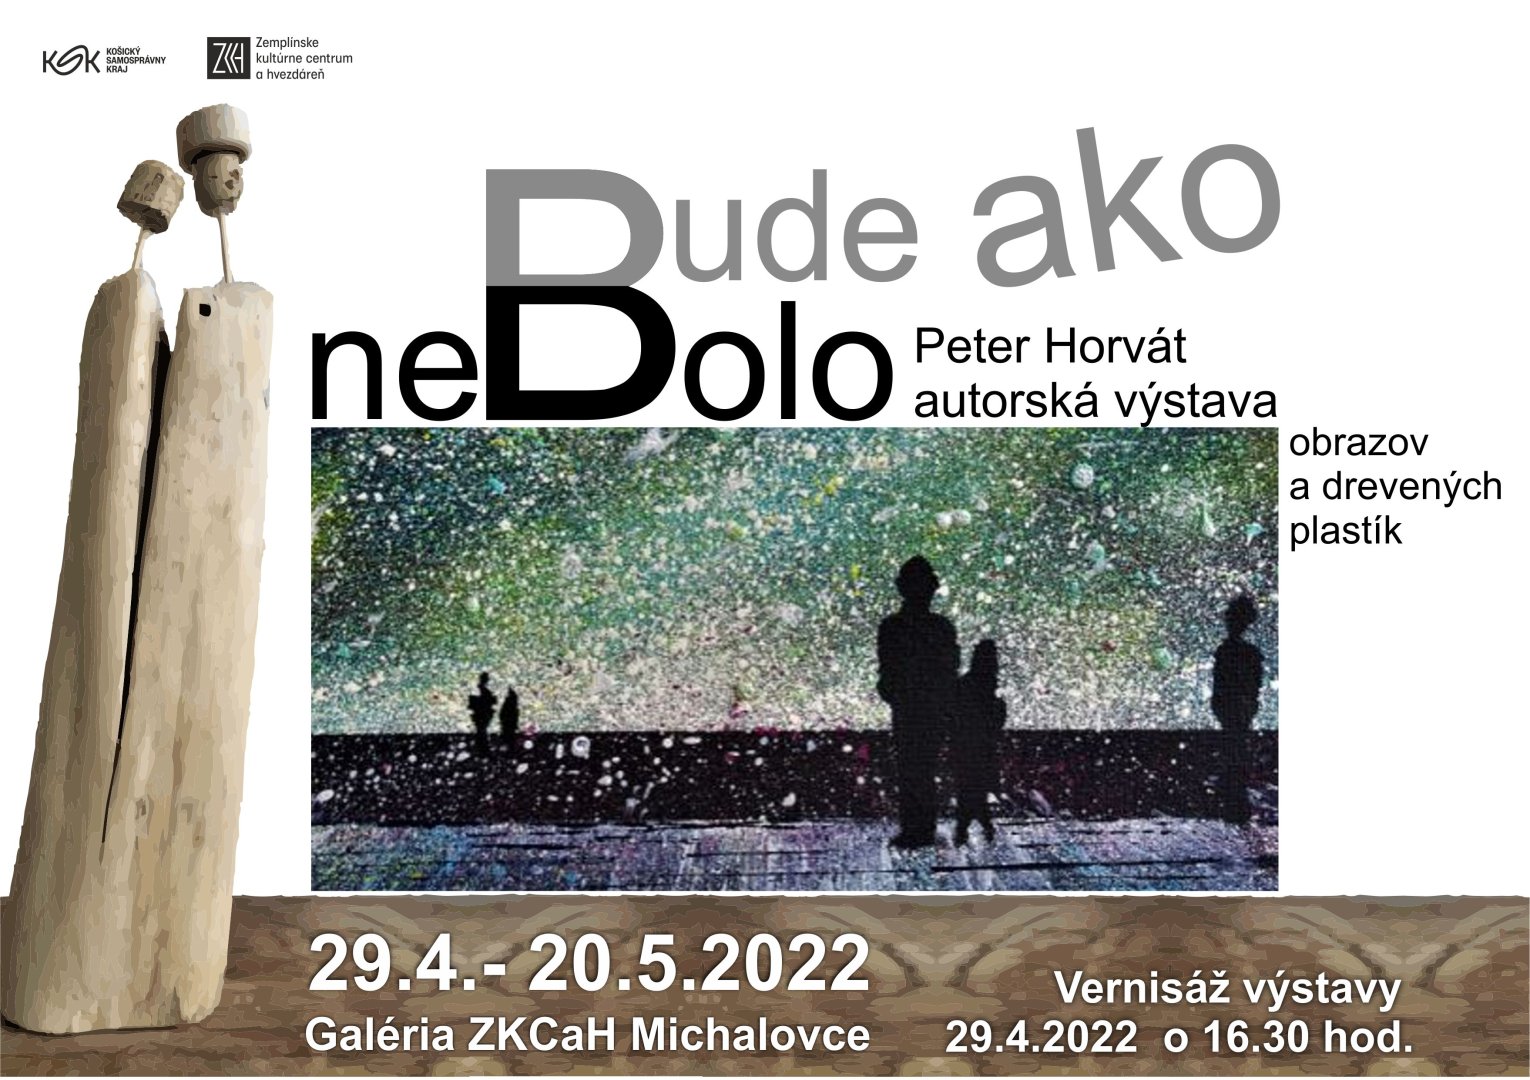 Peter Horvát- Bude ako nebolo